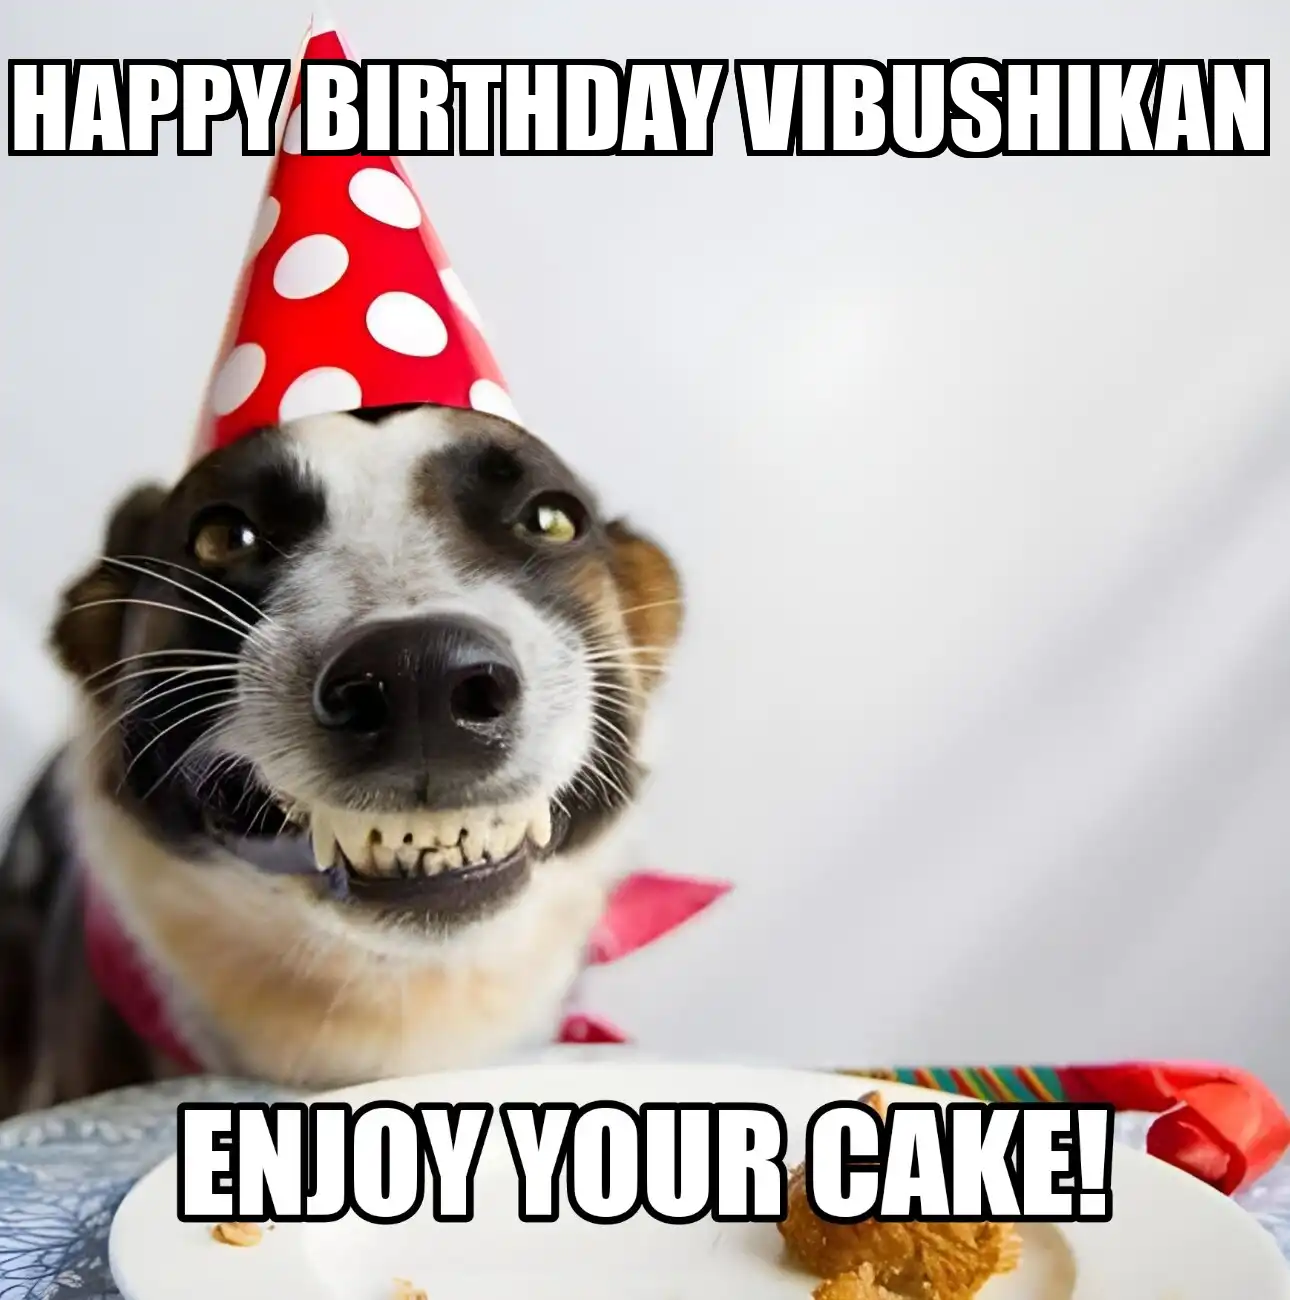 Happy Birthday Vibushikan Enjoy Your Cake Dog Meme